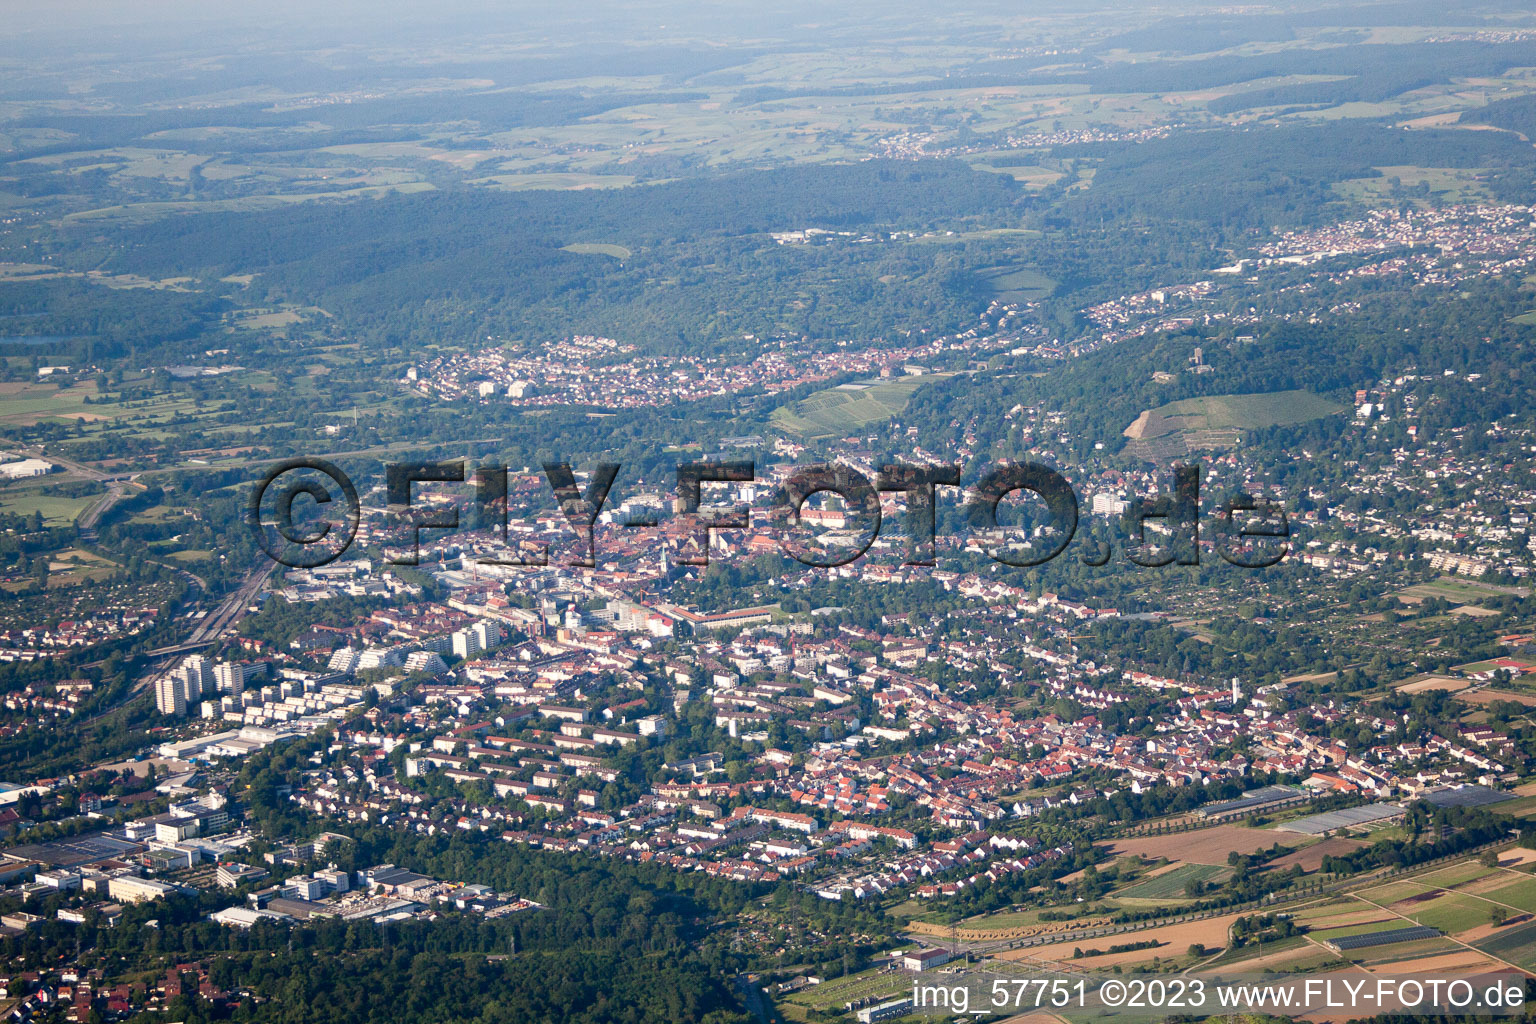 Ortsteil Durlach in Karlsruhe im Bundesland Baden-Württemberg, Deutschland aus der Drohnenperspektive